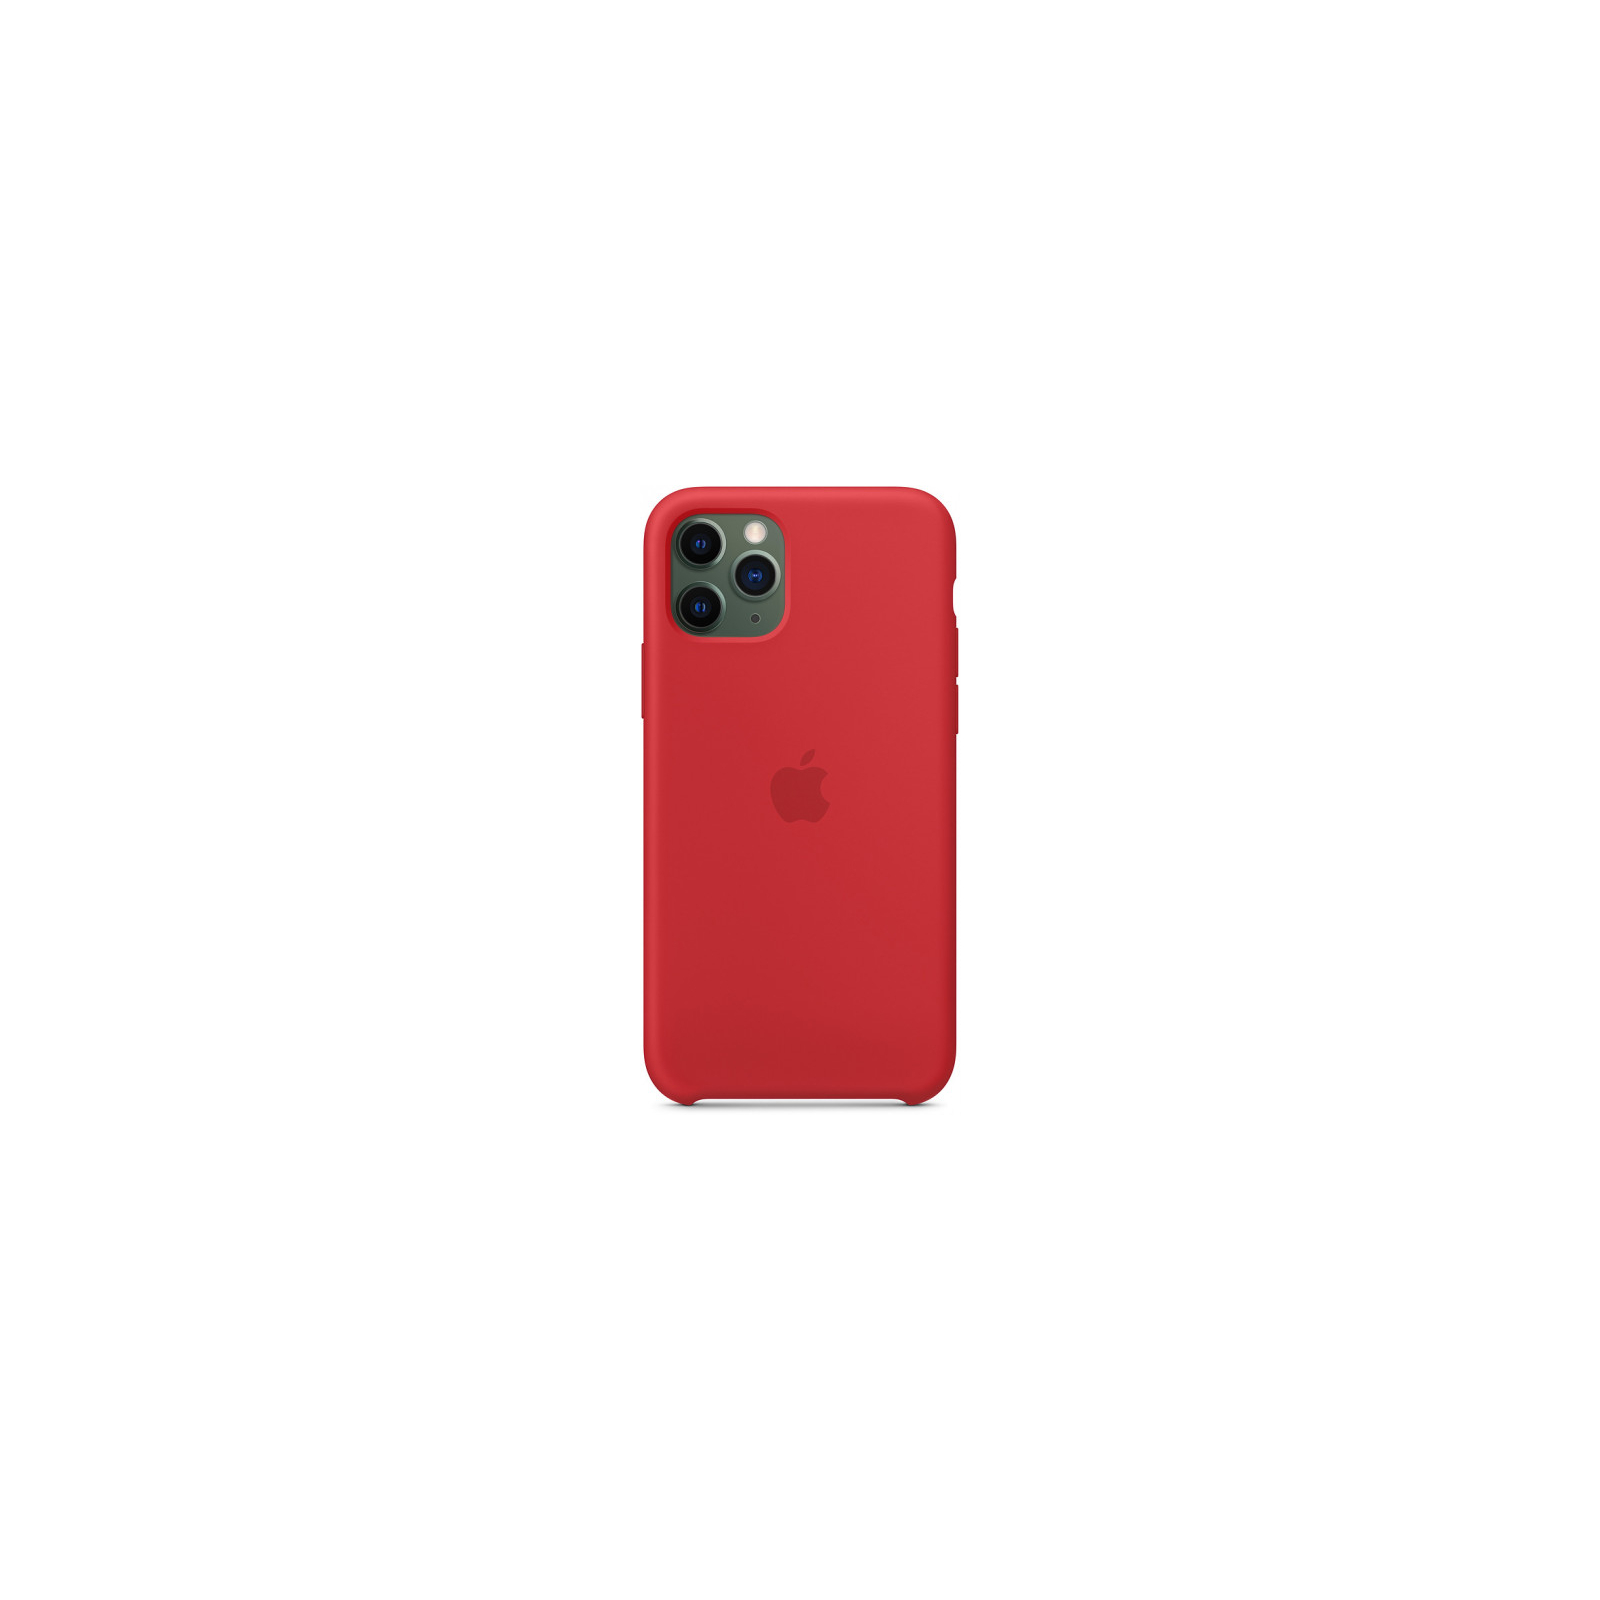 Чехол для мобильного телефона Apple iPhone 11 Pro Silicone Case - (PRODUCT)RED (MWYH2ZM/A) изображение 3